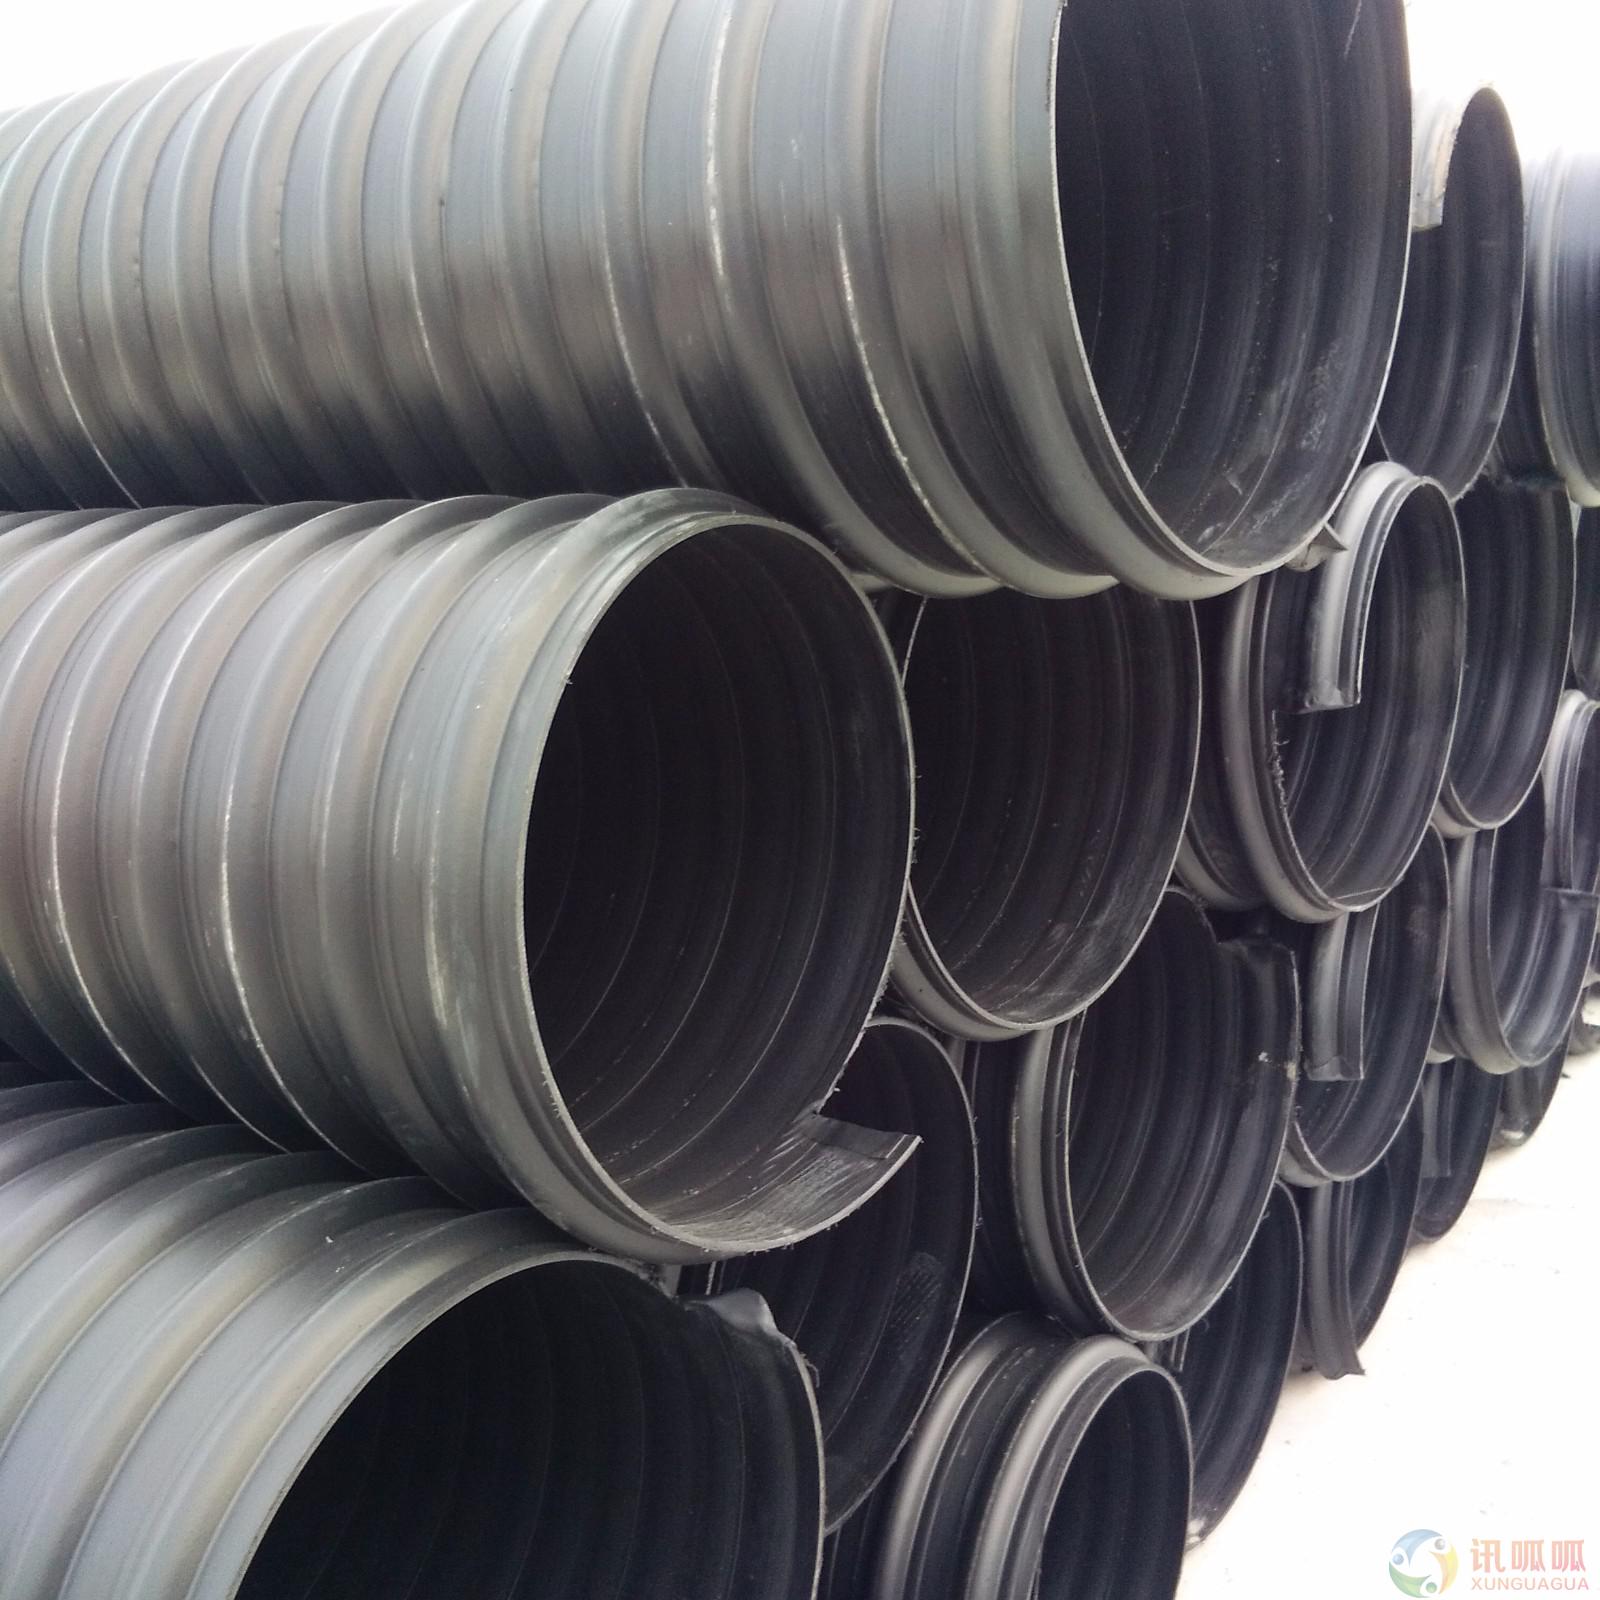 长沙市HDPE双壁波纹管和钢带增强聚厂家HDPE双壁波纹管和钢带增强聚乙 烯螺旋波纹管的区别是什么